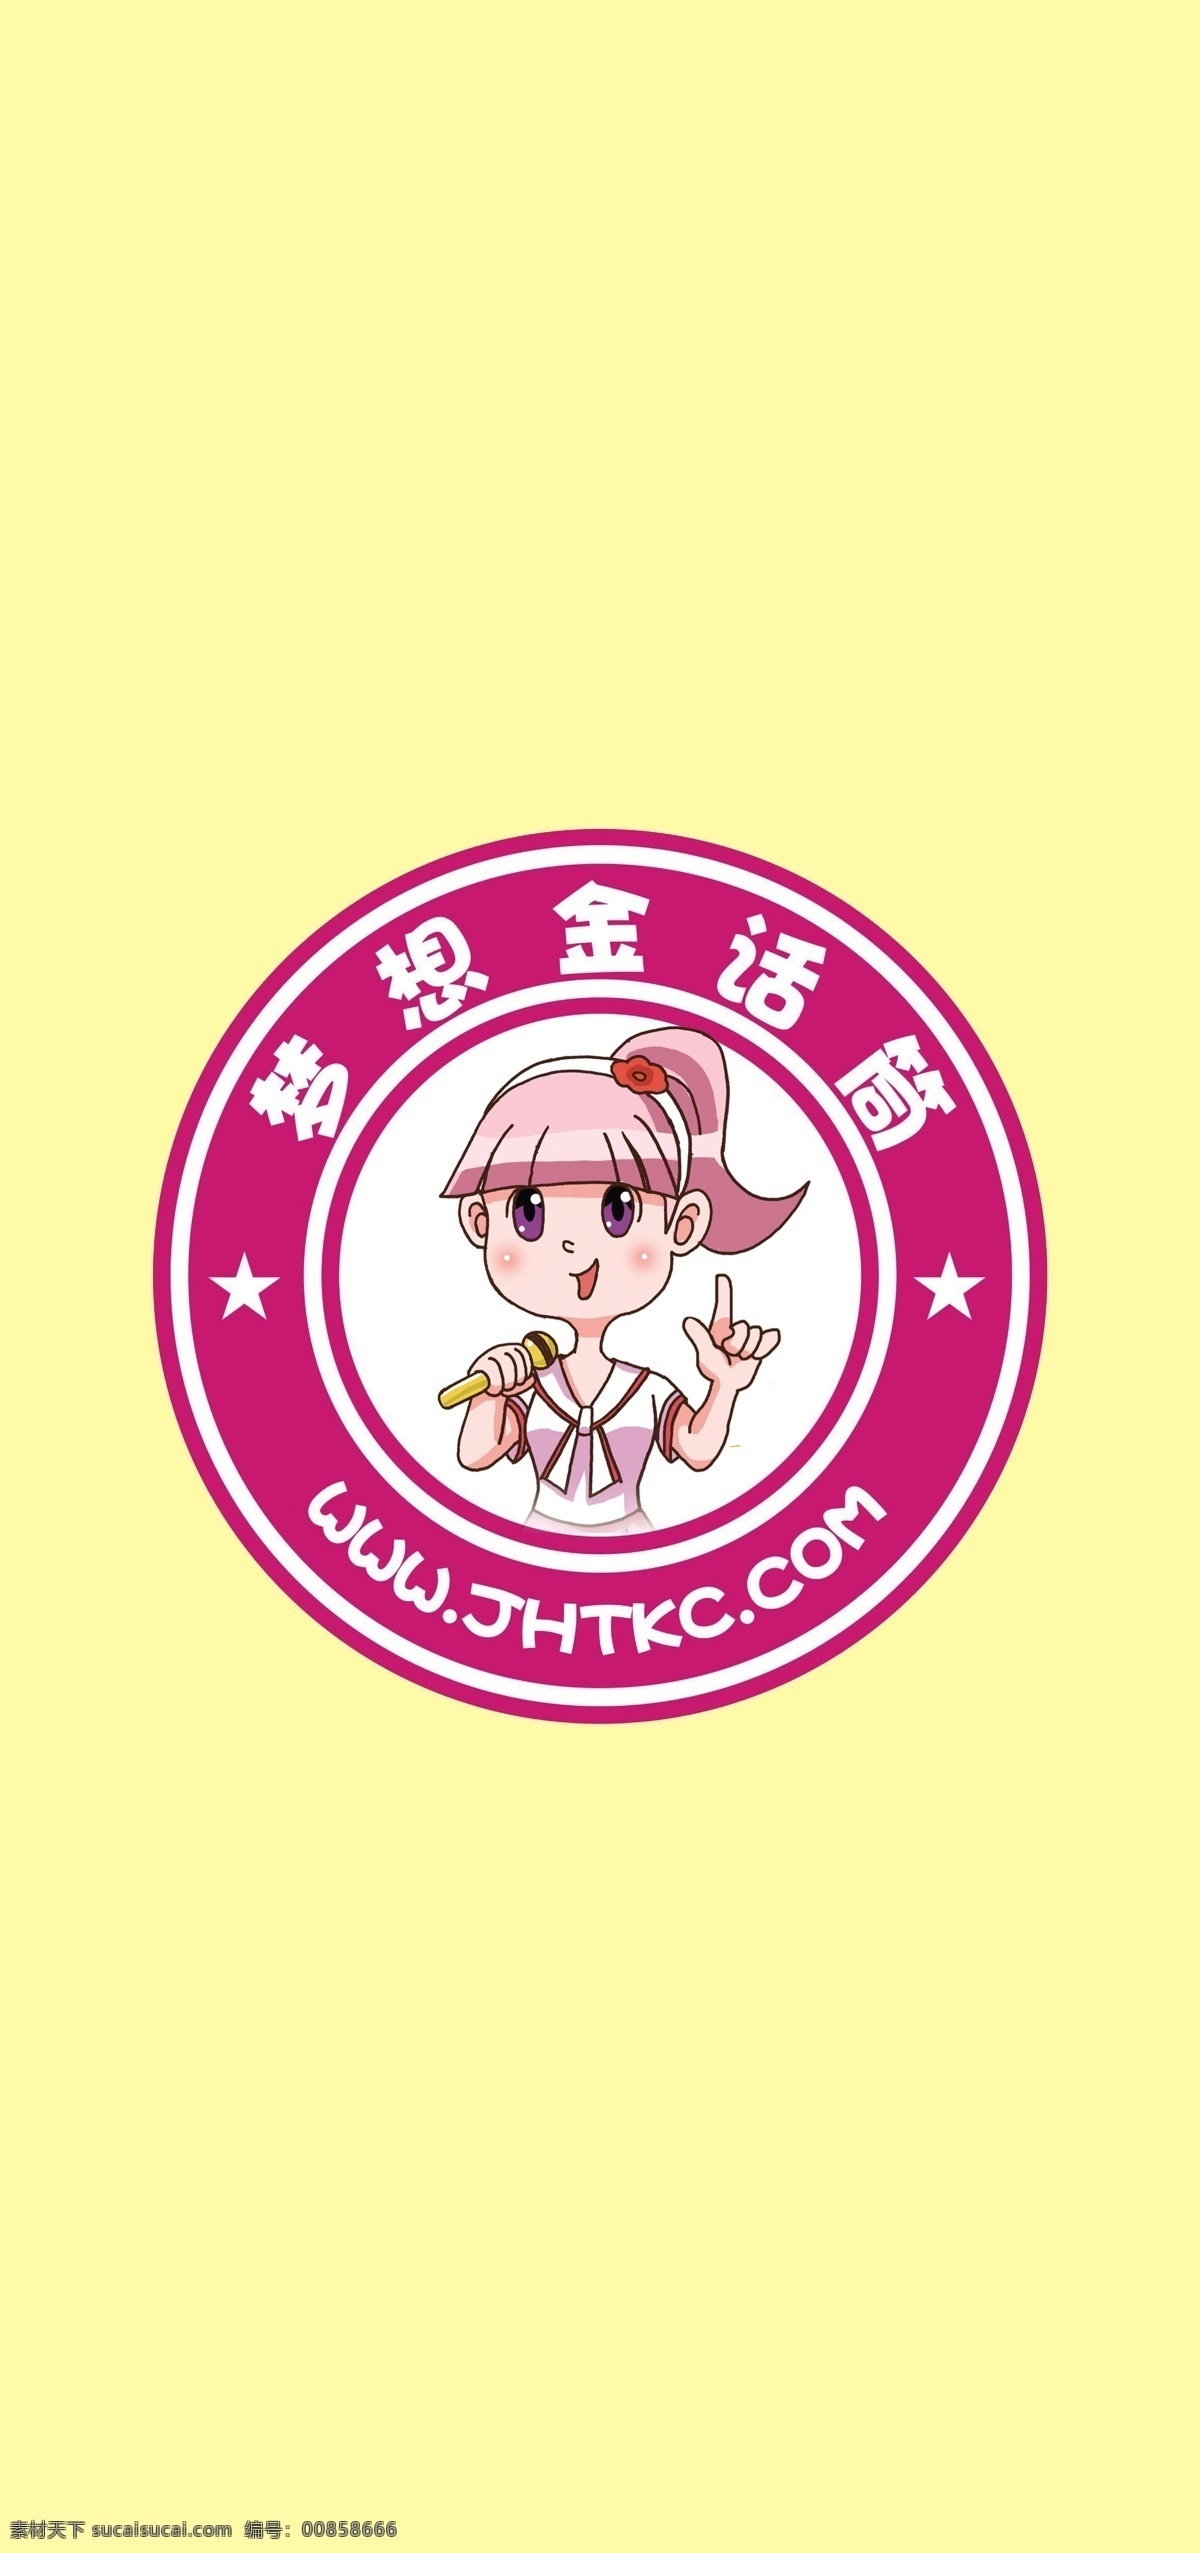 梦想 金 话筒 logo 卡通 标志 圆形 小女孩 唱歌 logo设计